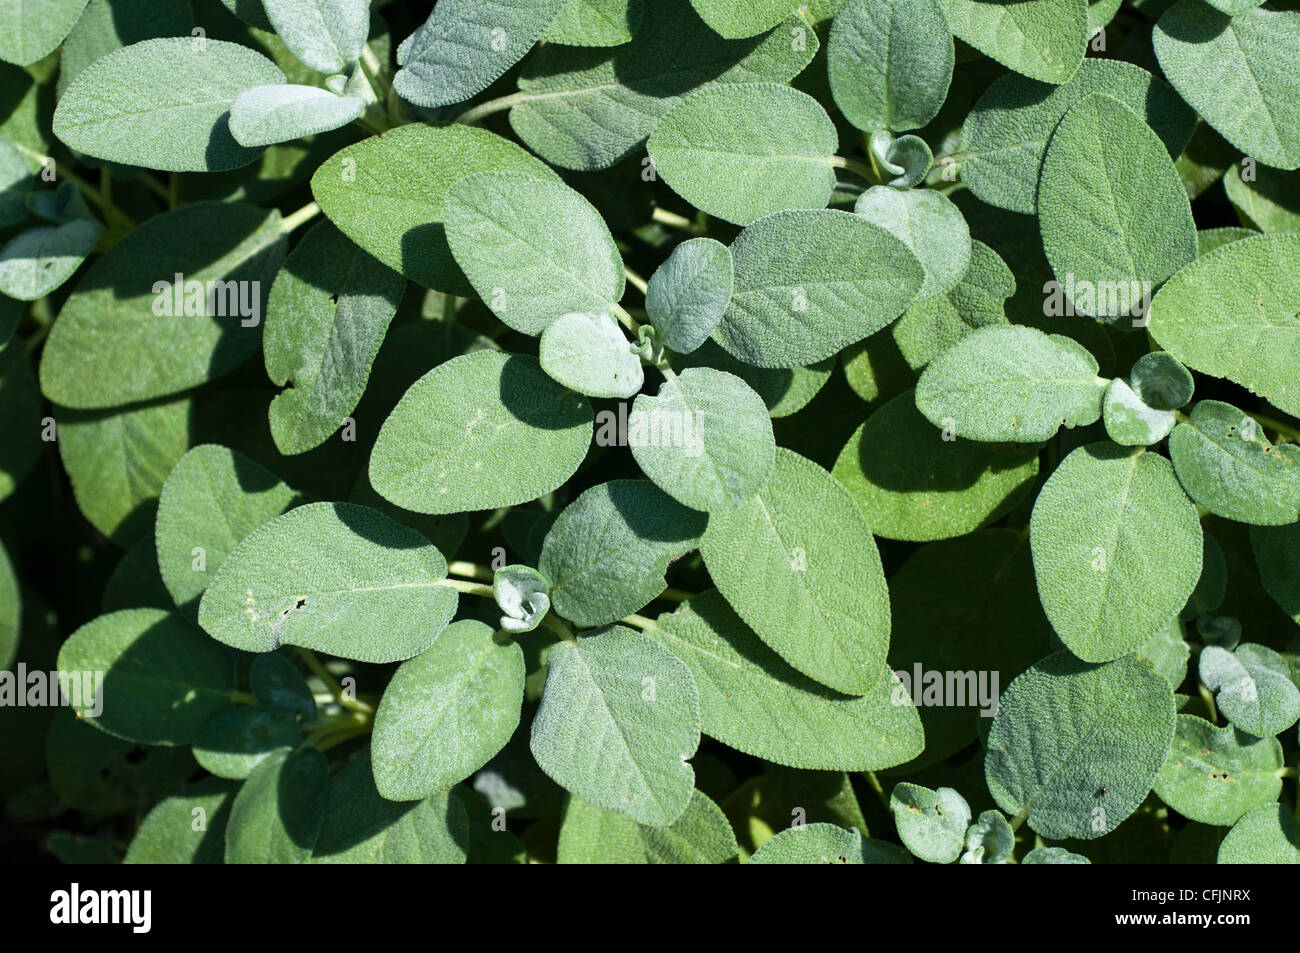 Berggarten Sage, Salvia officinalis Berggarten, Labiatae Stock Photo